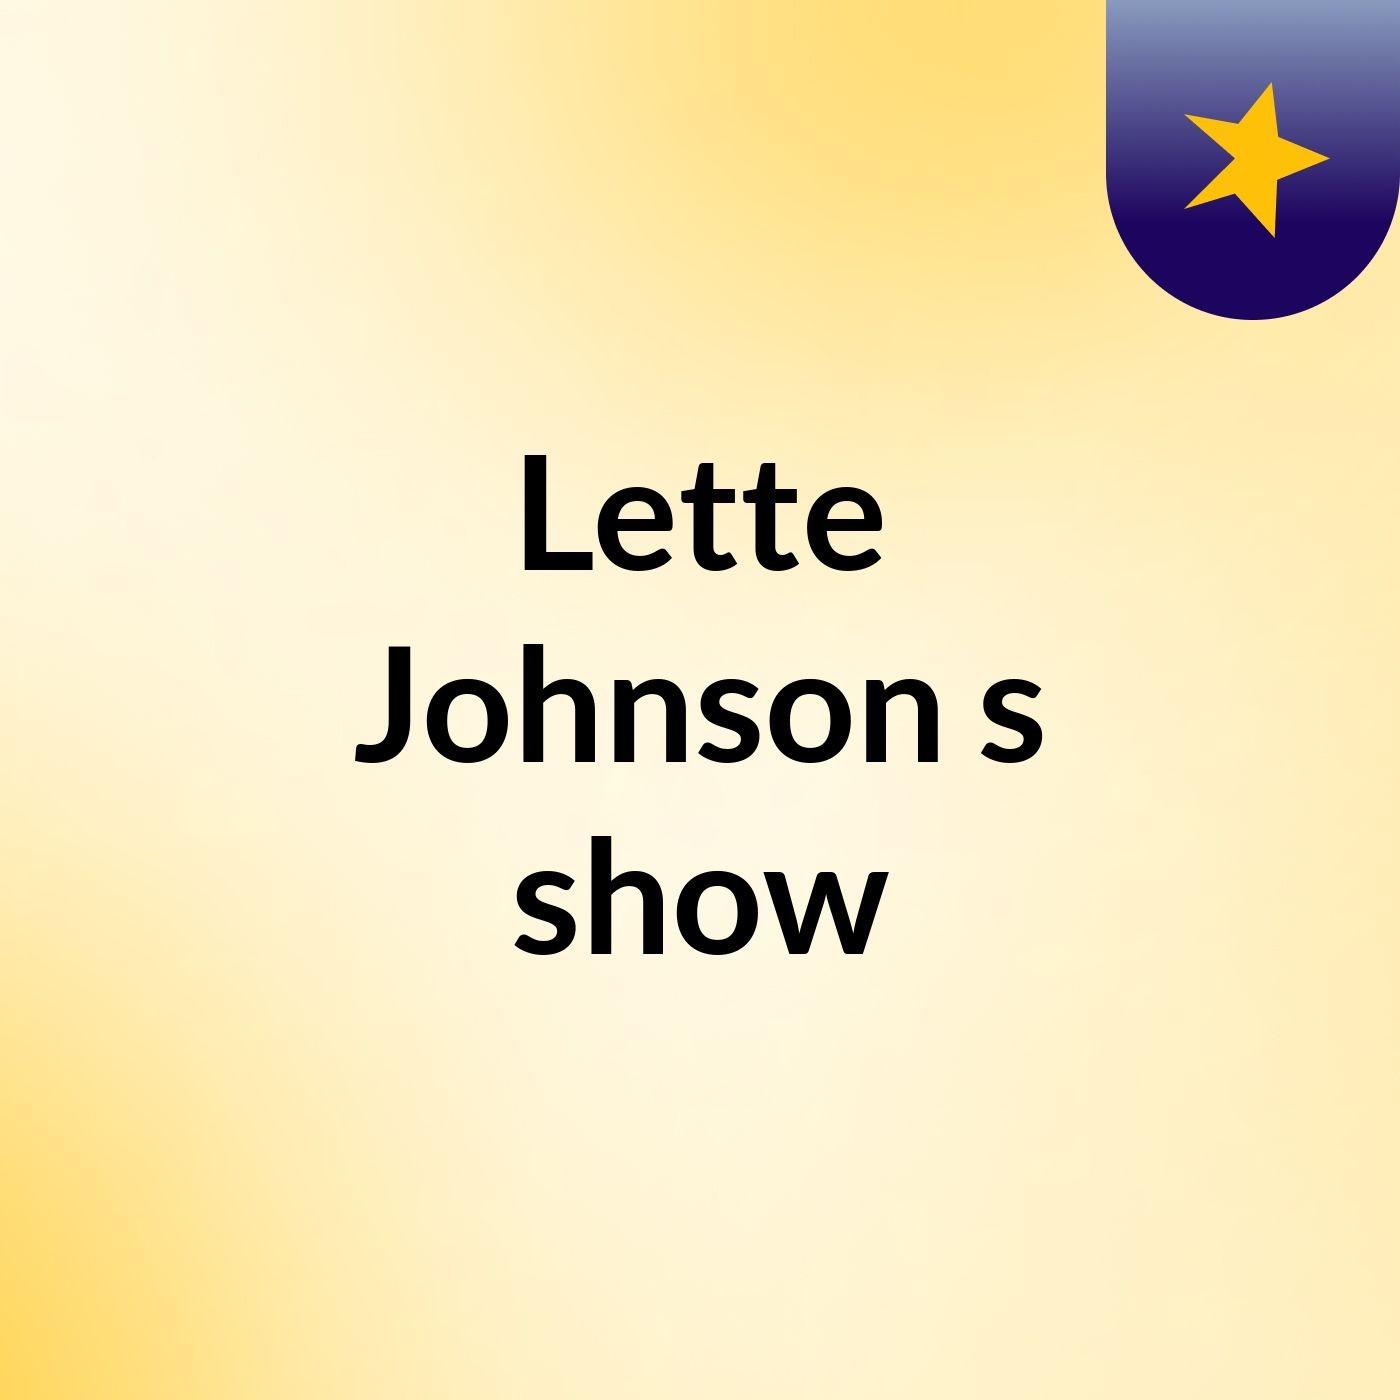 Lette Johnson's show